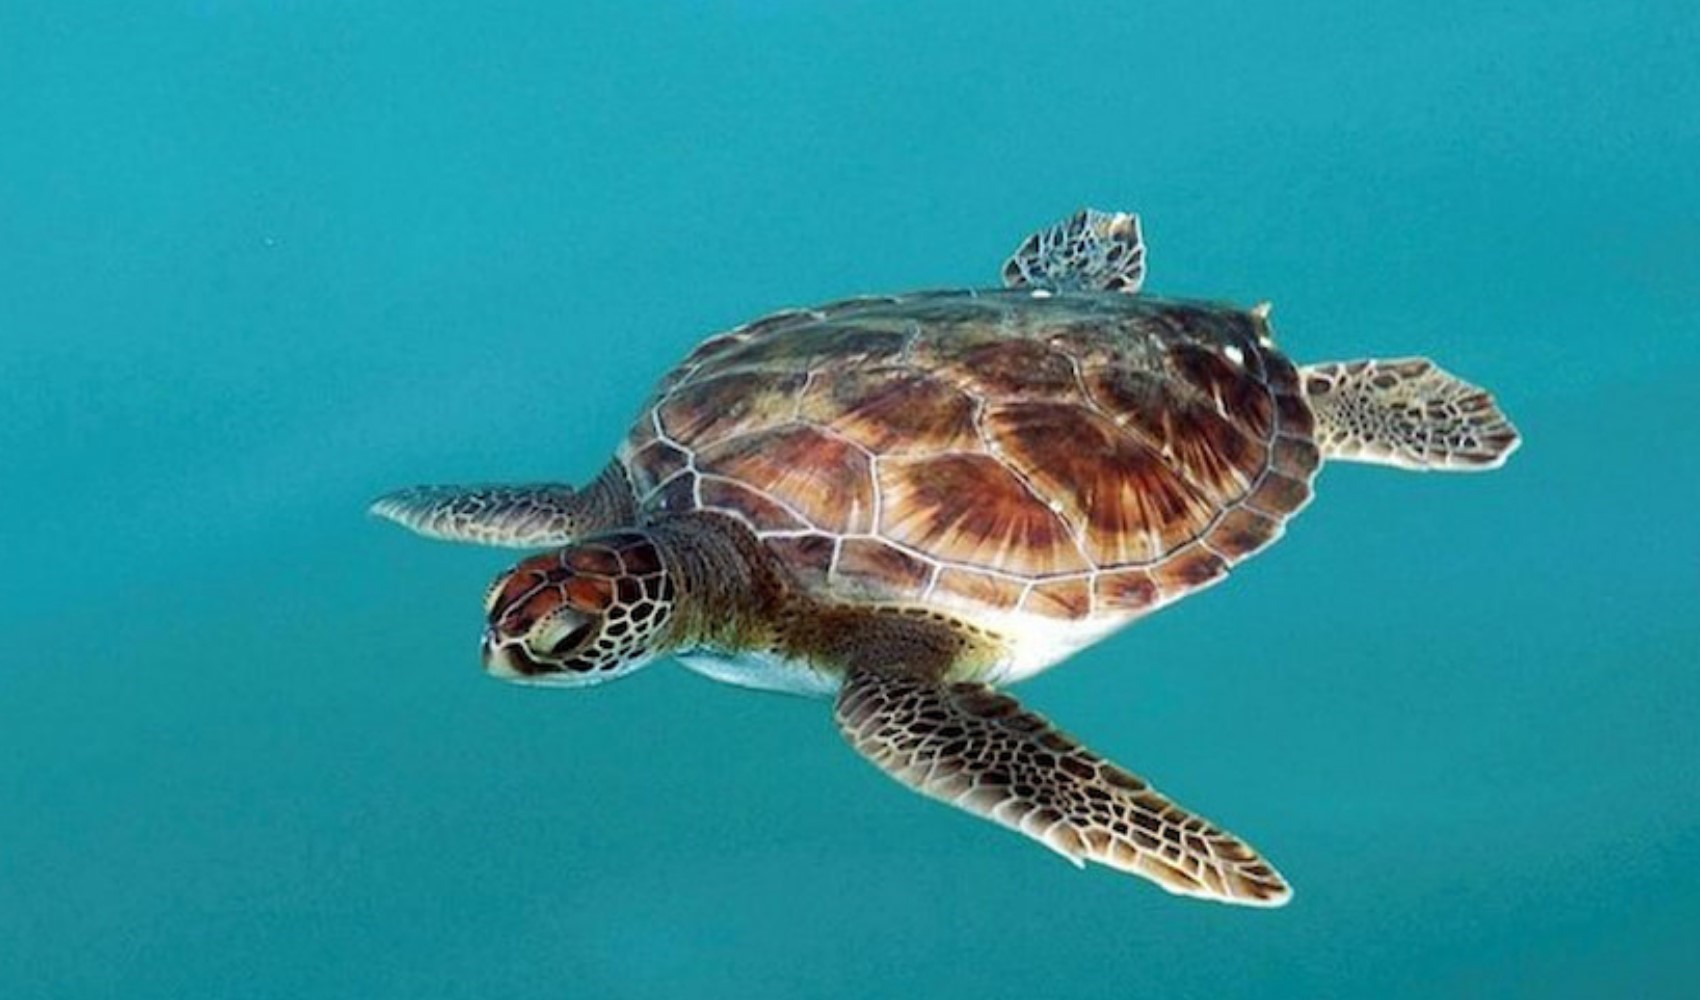 Kızıldeniz'de yaşamını sürdüren deniz kaplumbağaları böyle görüntülendi